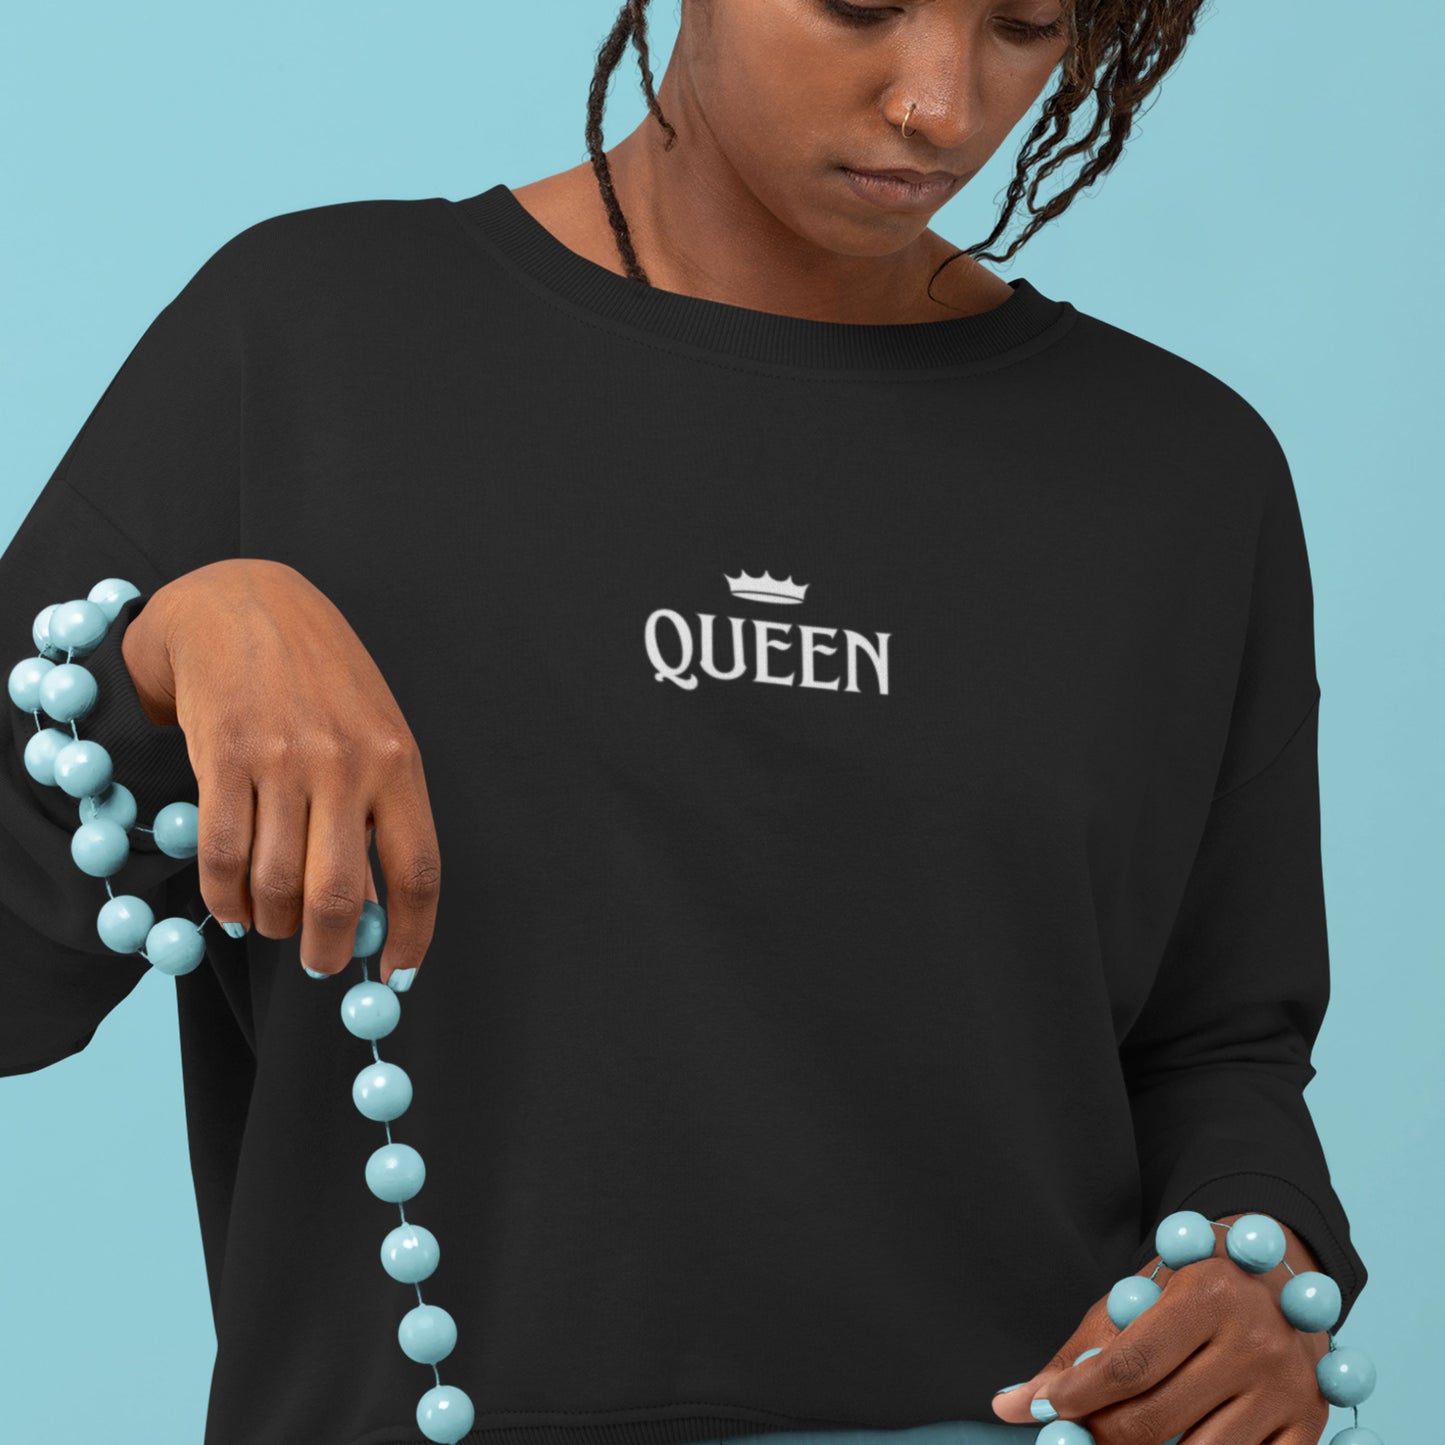 QUEEN Unisex Heavy Blend Crewneck Sweatshirt. Queen Royal Sweatshirt. Funny Sweater, Gift for Girlfriend, Queen Gift, Queen's Crown